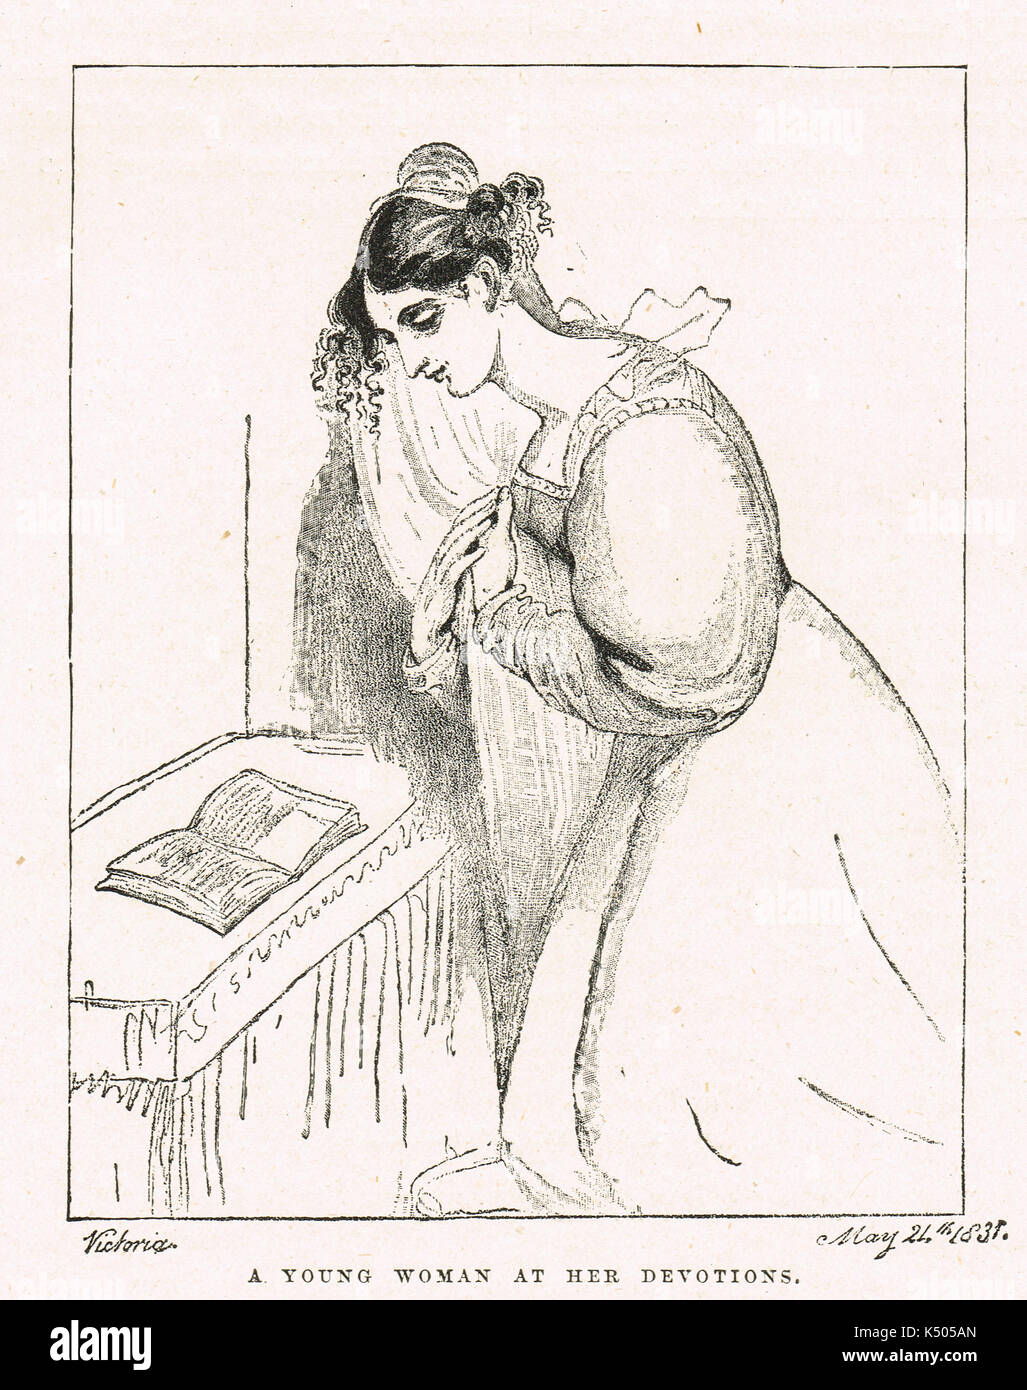 Schizzo dalla Principessa Victoria, poi regina Victoria, datata 1831 Foto Stock